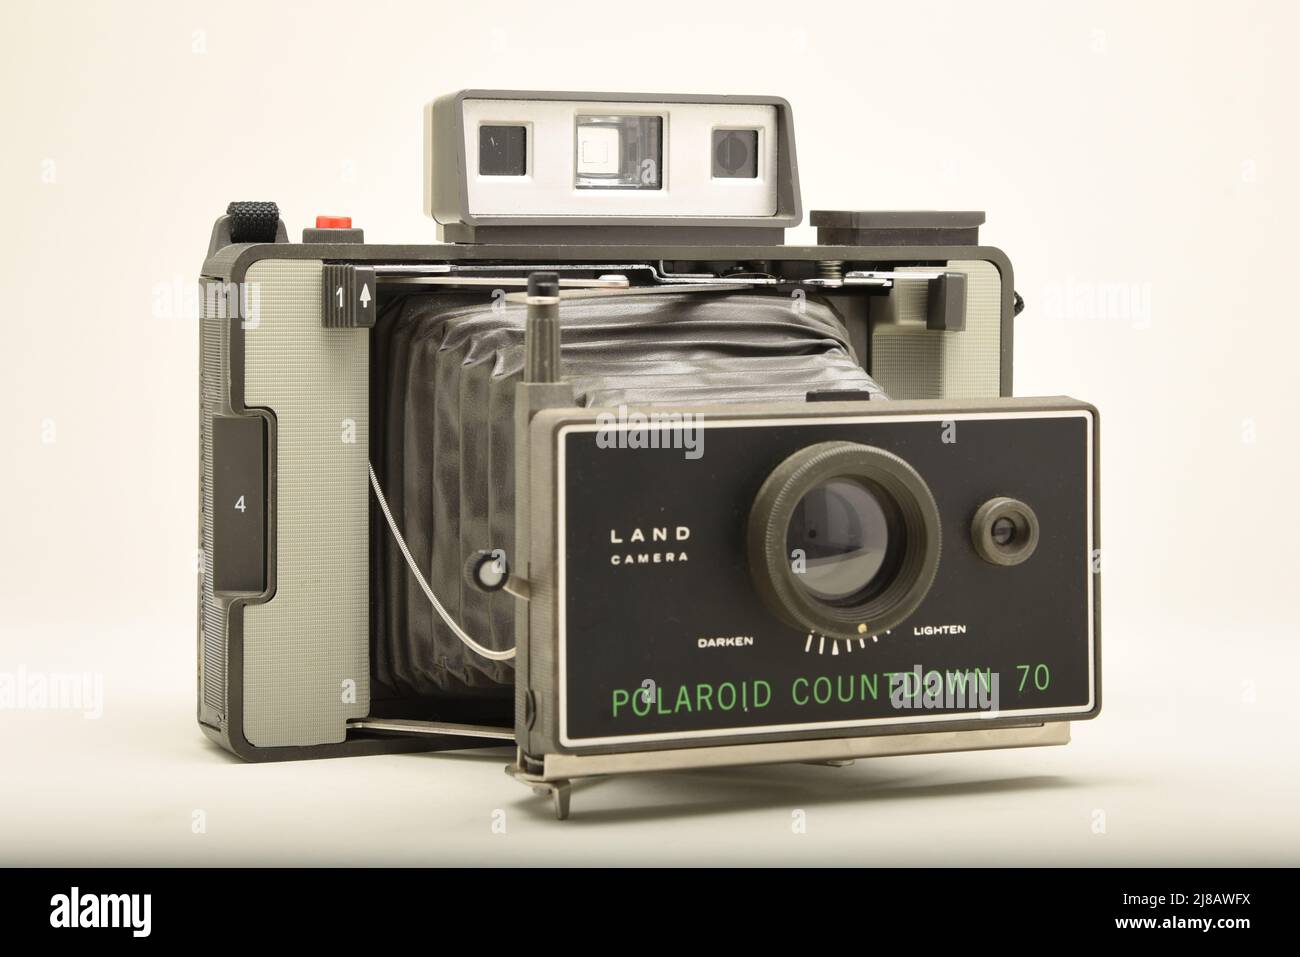 Polaroid Land Camera Countdown 70 Stock Photo